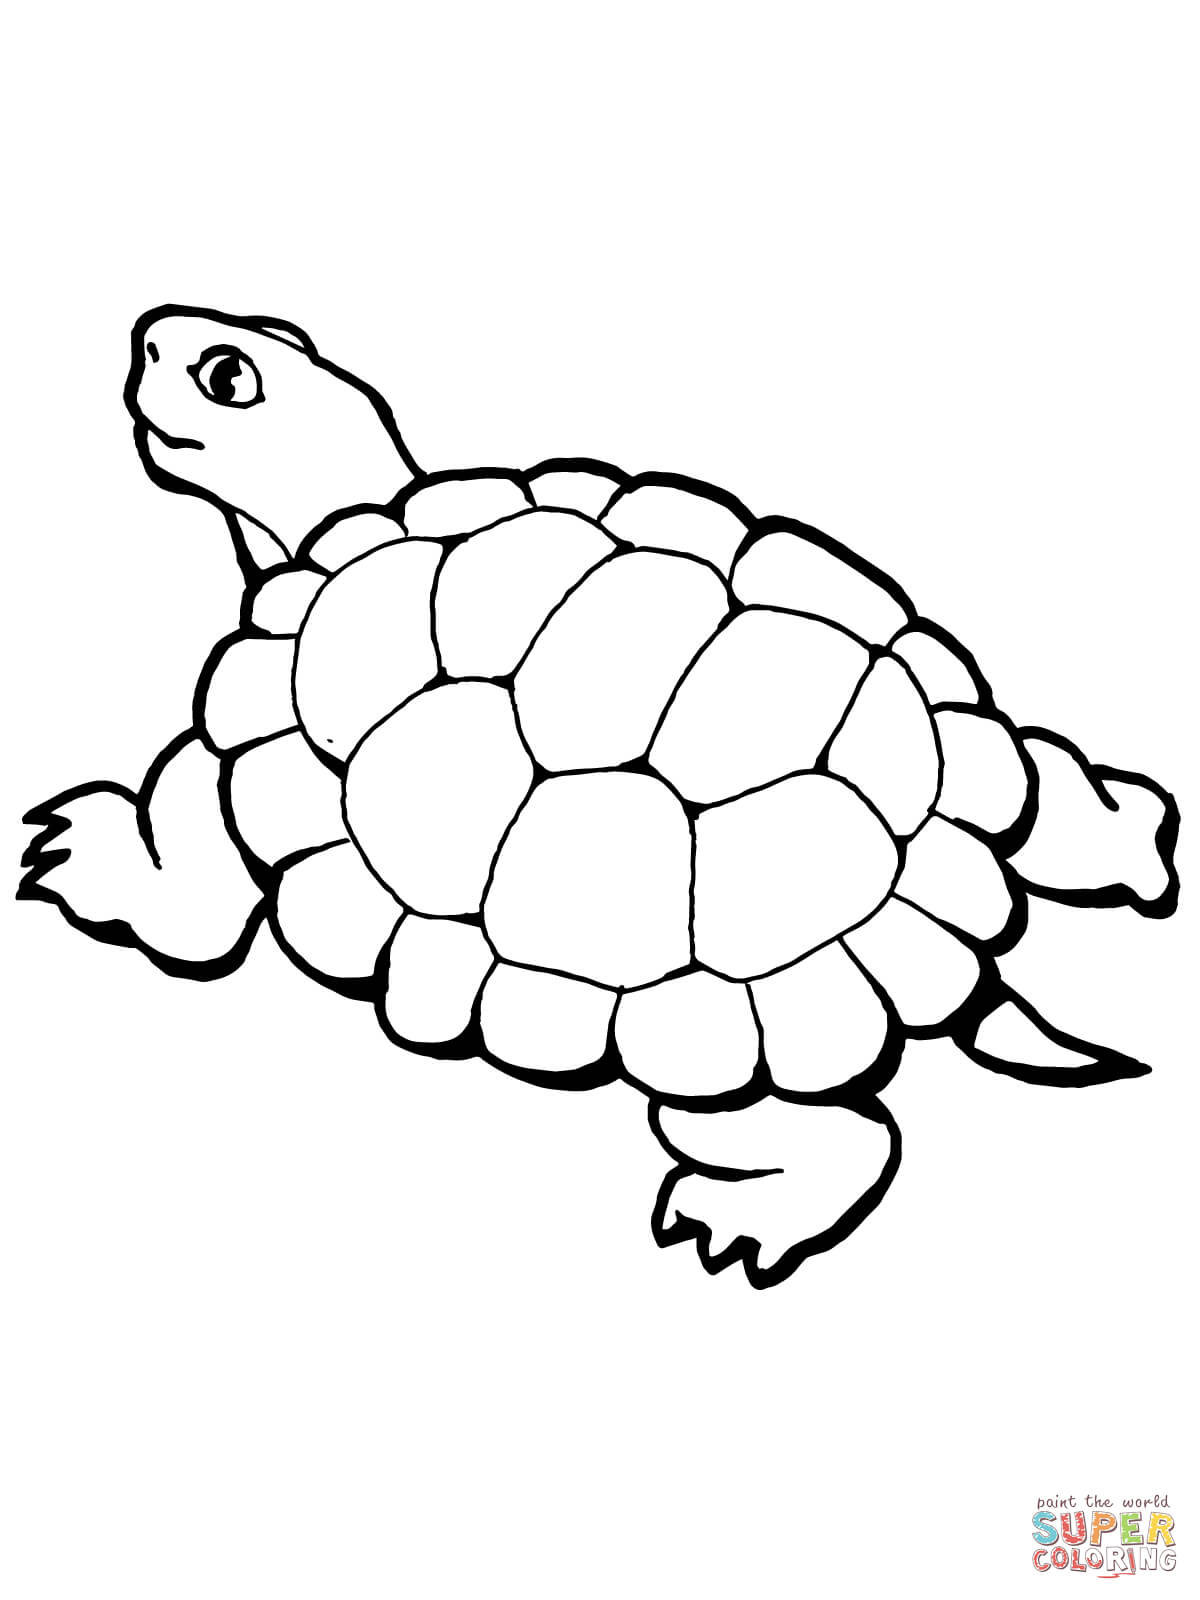 Ausmalbild: Gehende Schildkröte | Ausmalbilder Kostenlos Zum verwandt mit Schildkröte Ausmalbild